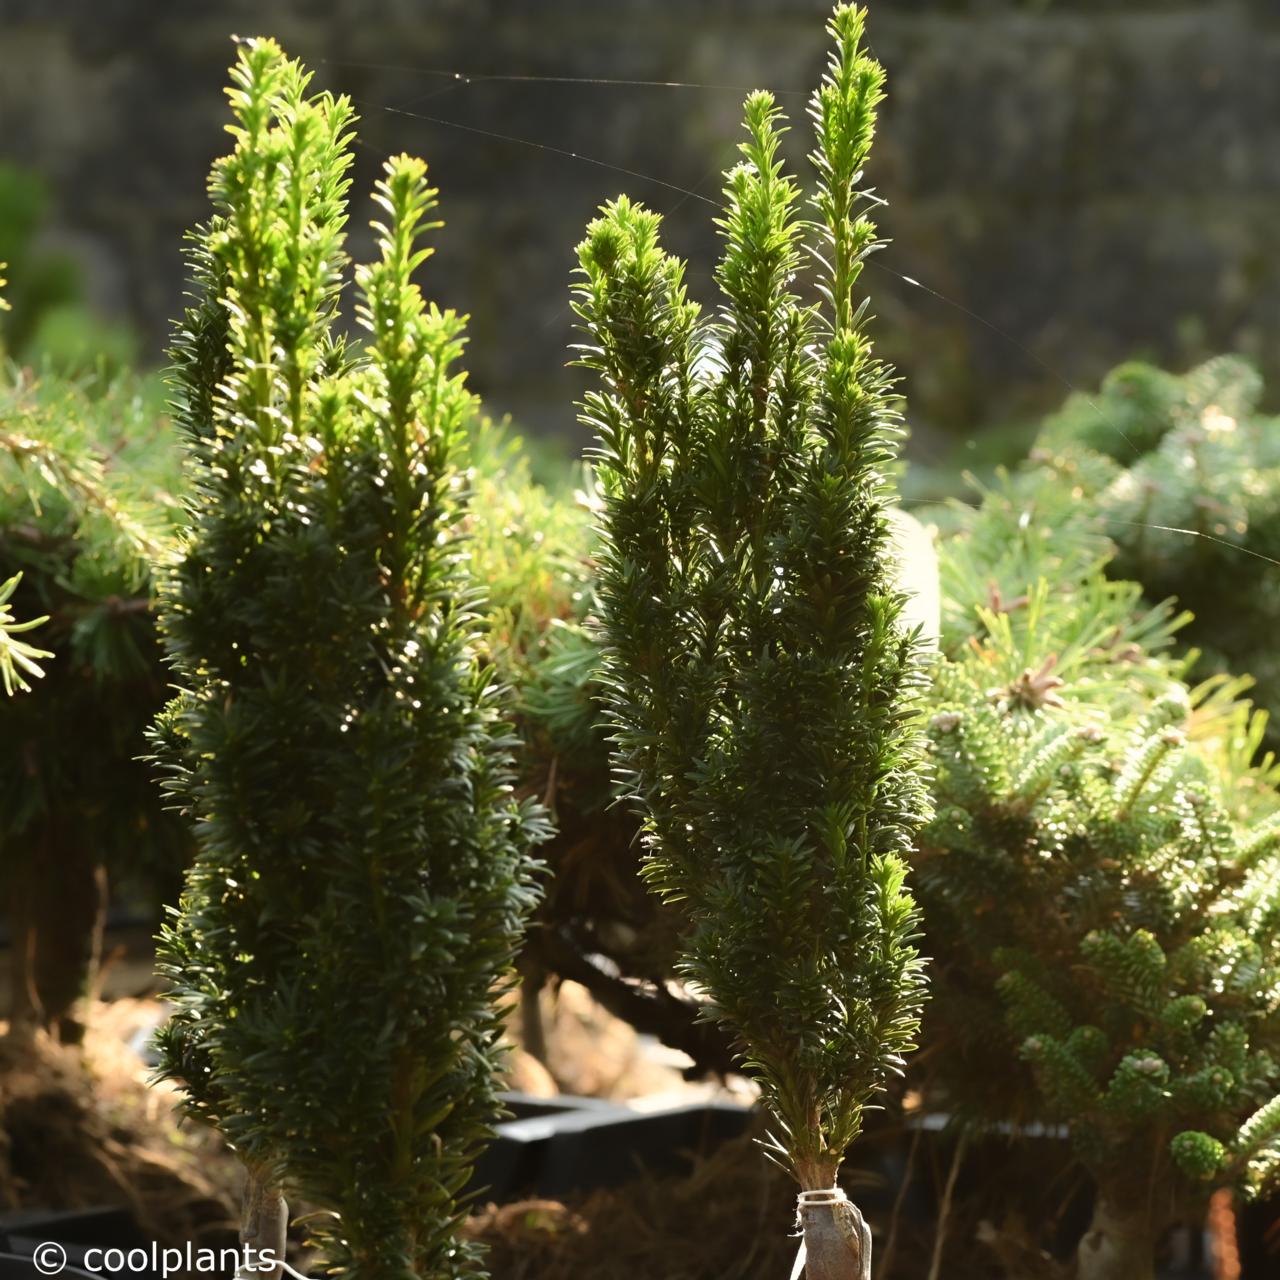 taxus baccata 'micro' - kaufen sie pflanzen bei coolplants